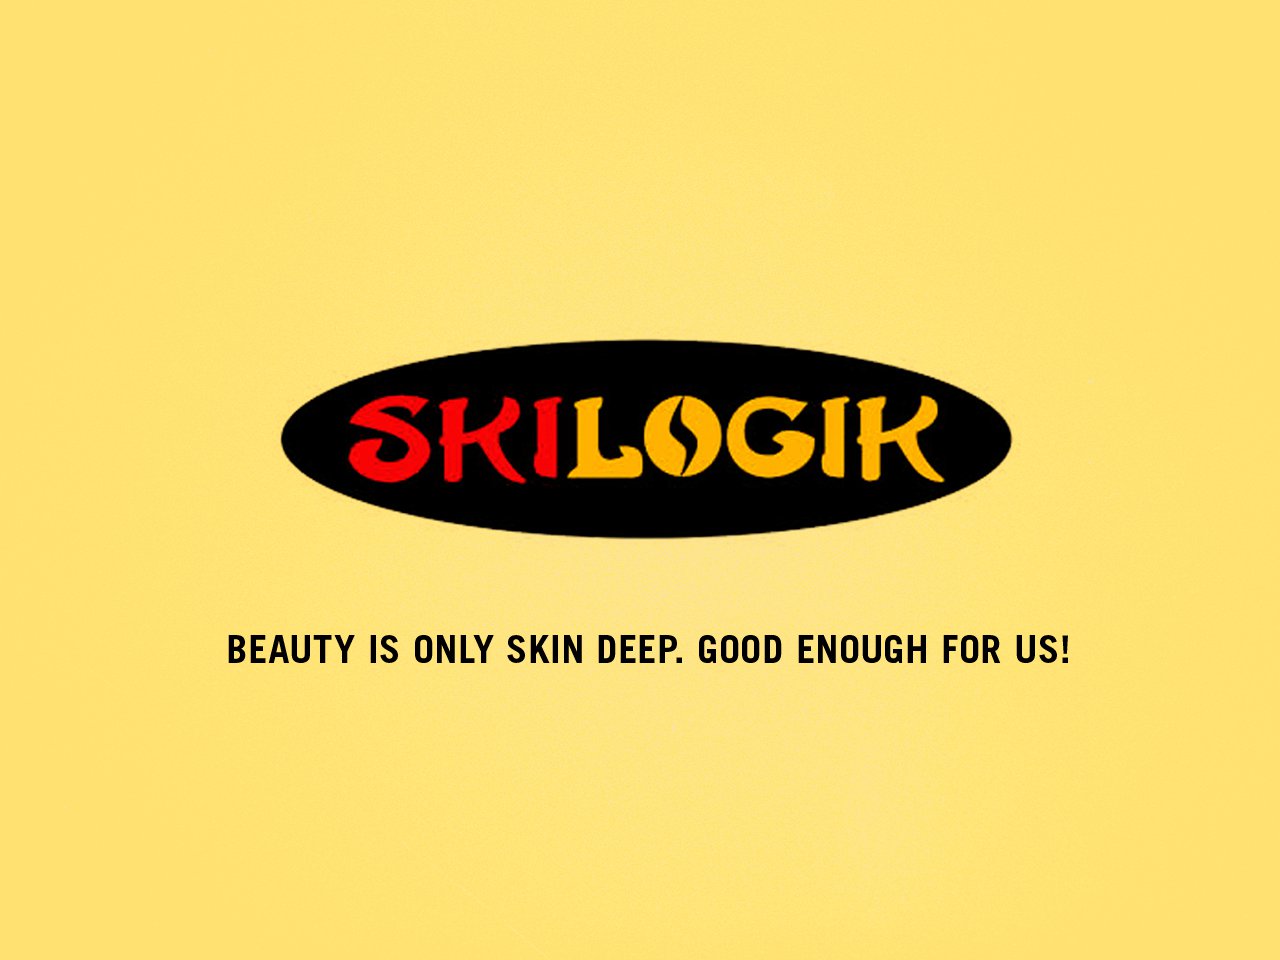 Honest Ski Company Slogans - SkiLogik